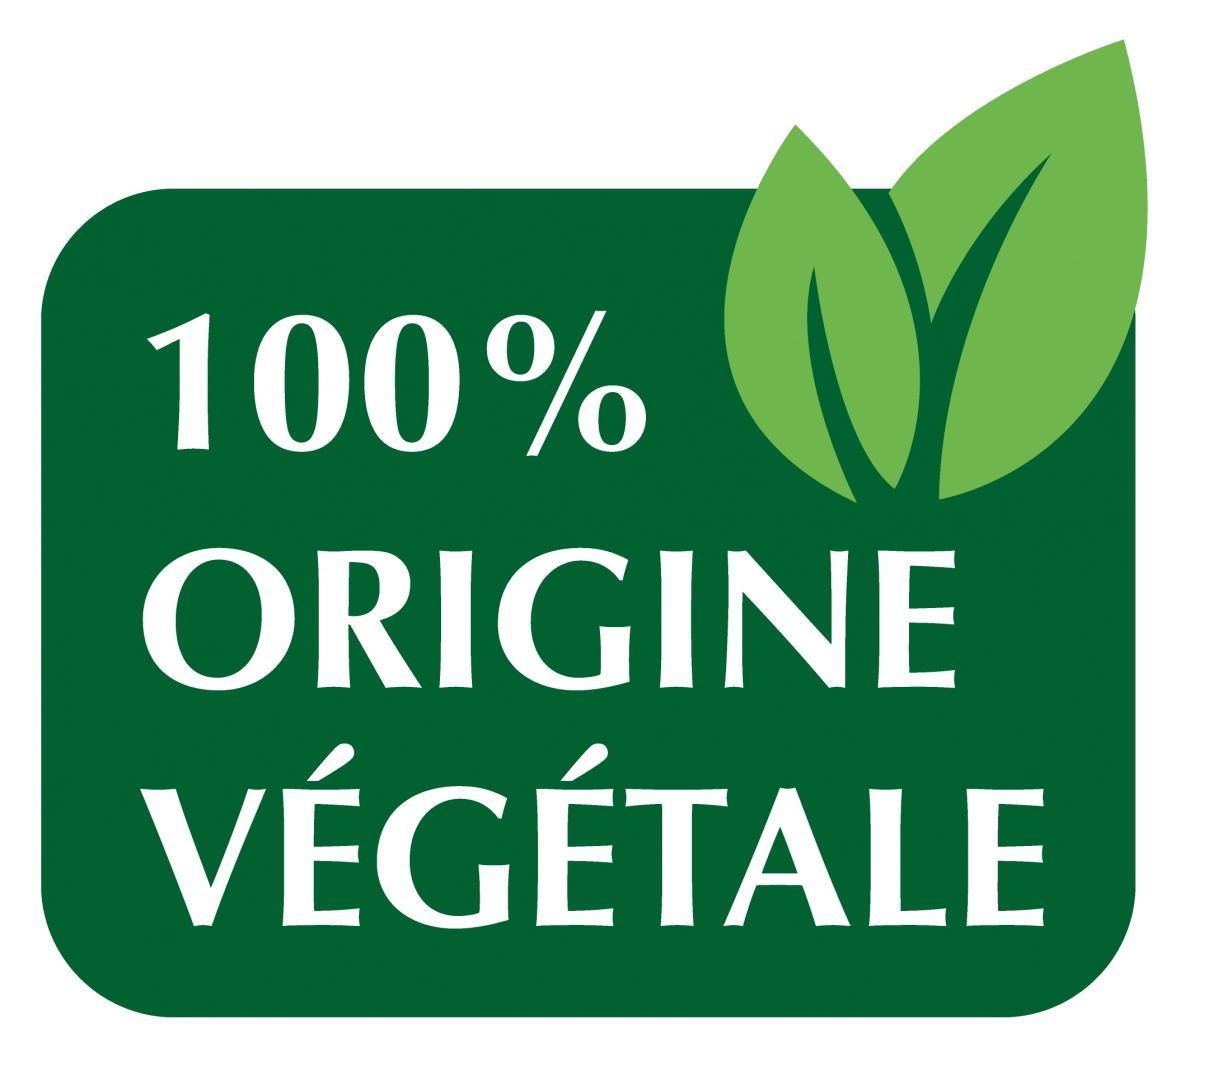 Image 100% vegetale